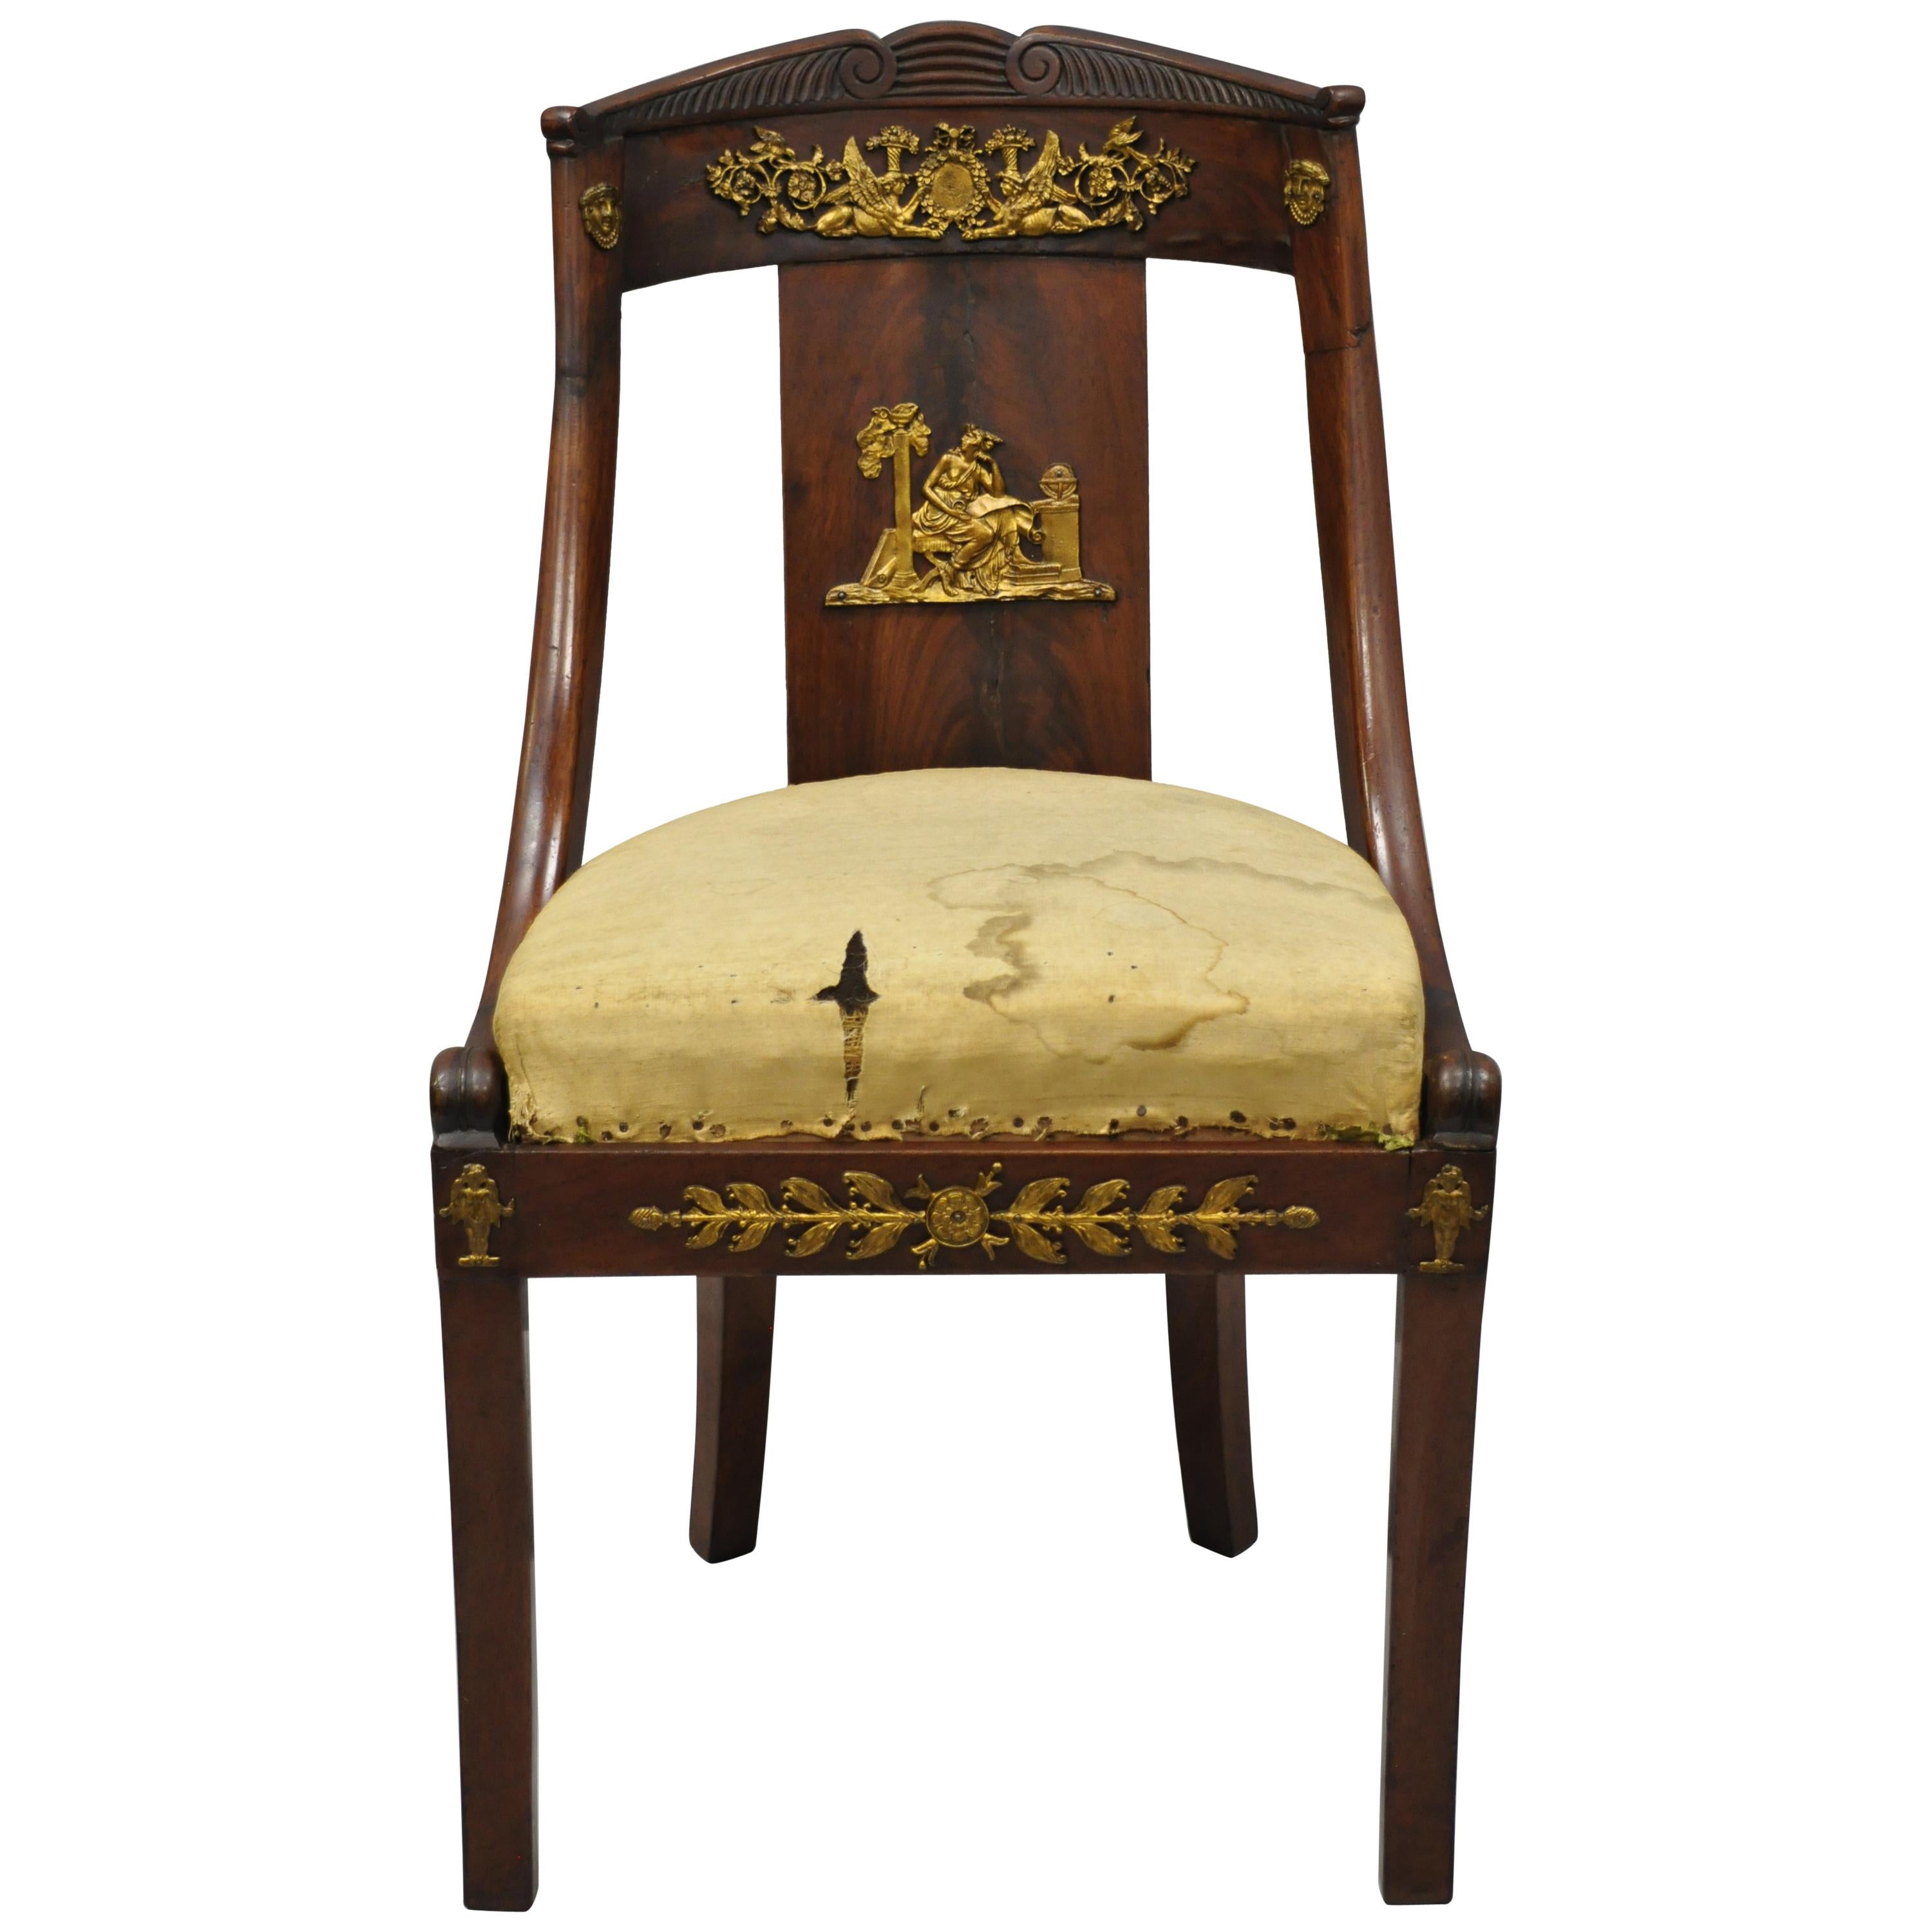 Chaise d'appoint en acajou de style Empire français du début du XIXe siècle avec bronze et bronze doré